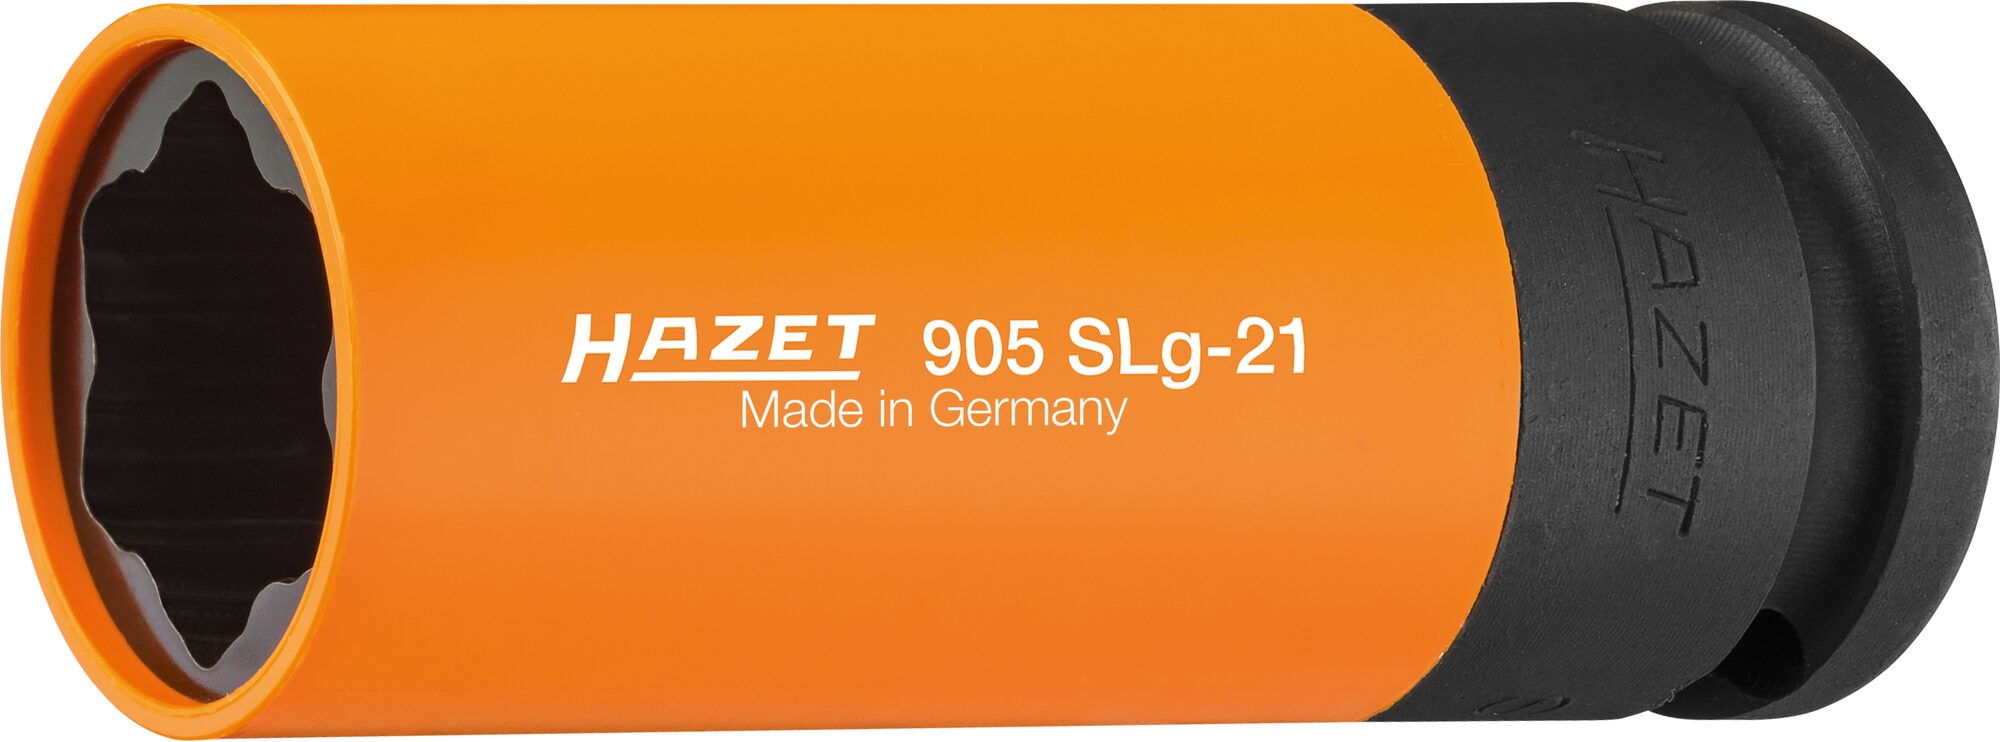 HAZET Schlag-, Maschinenschrauber Steckschlüsseleinsatz · Sonderprofil 905SLG-21 · Vierkant hohl 12,5 mm (1/2 Zoll) · Radschrauben Hybrid Sonderprofil · 21 mm